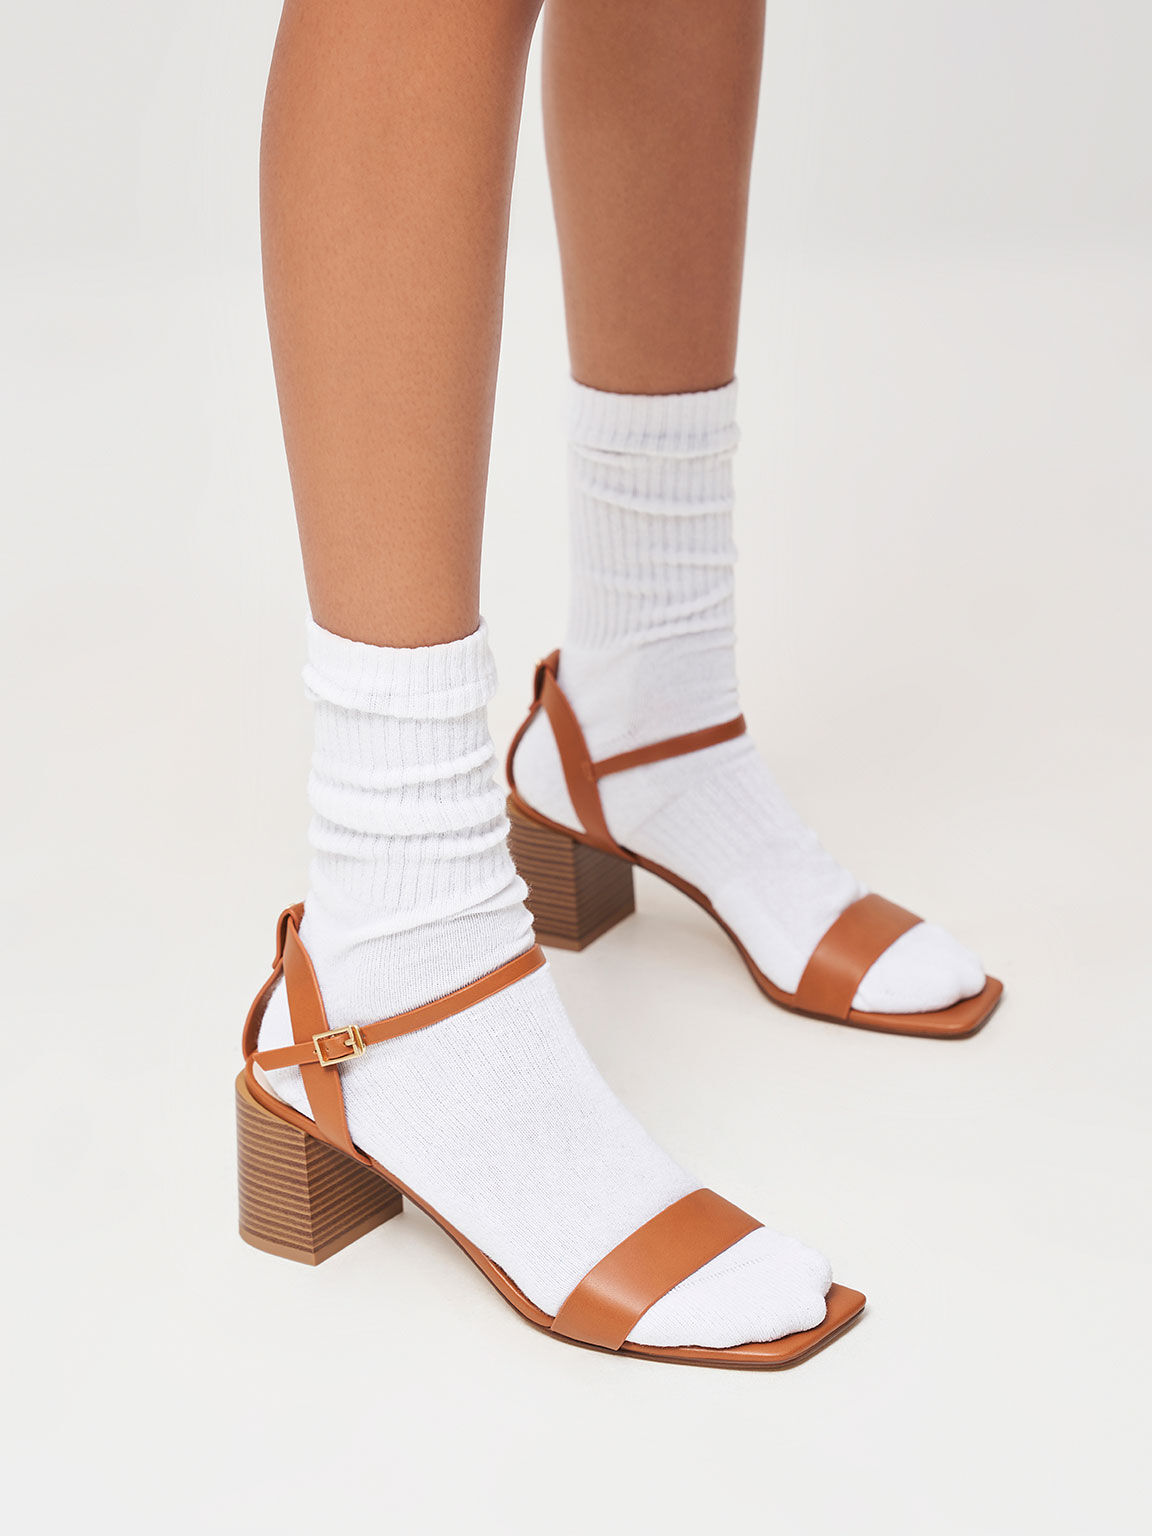 Sandal Stacked Heel Ankle Strap, Caramel, hi-res